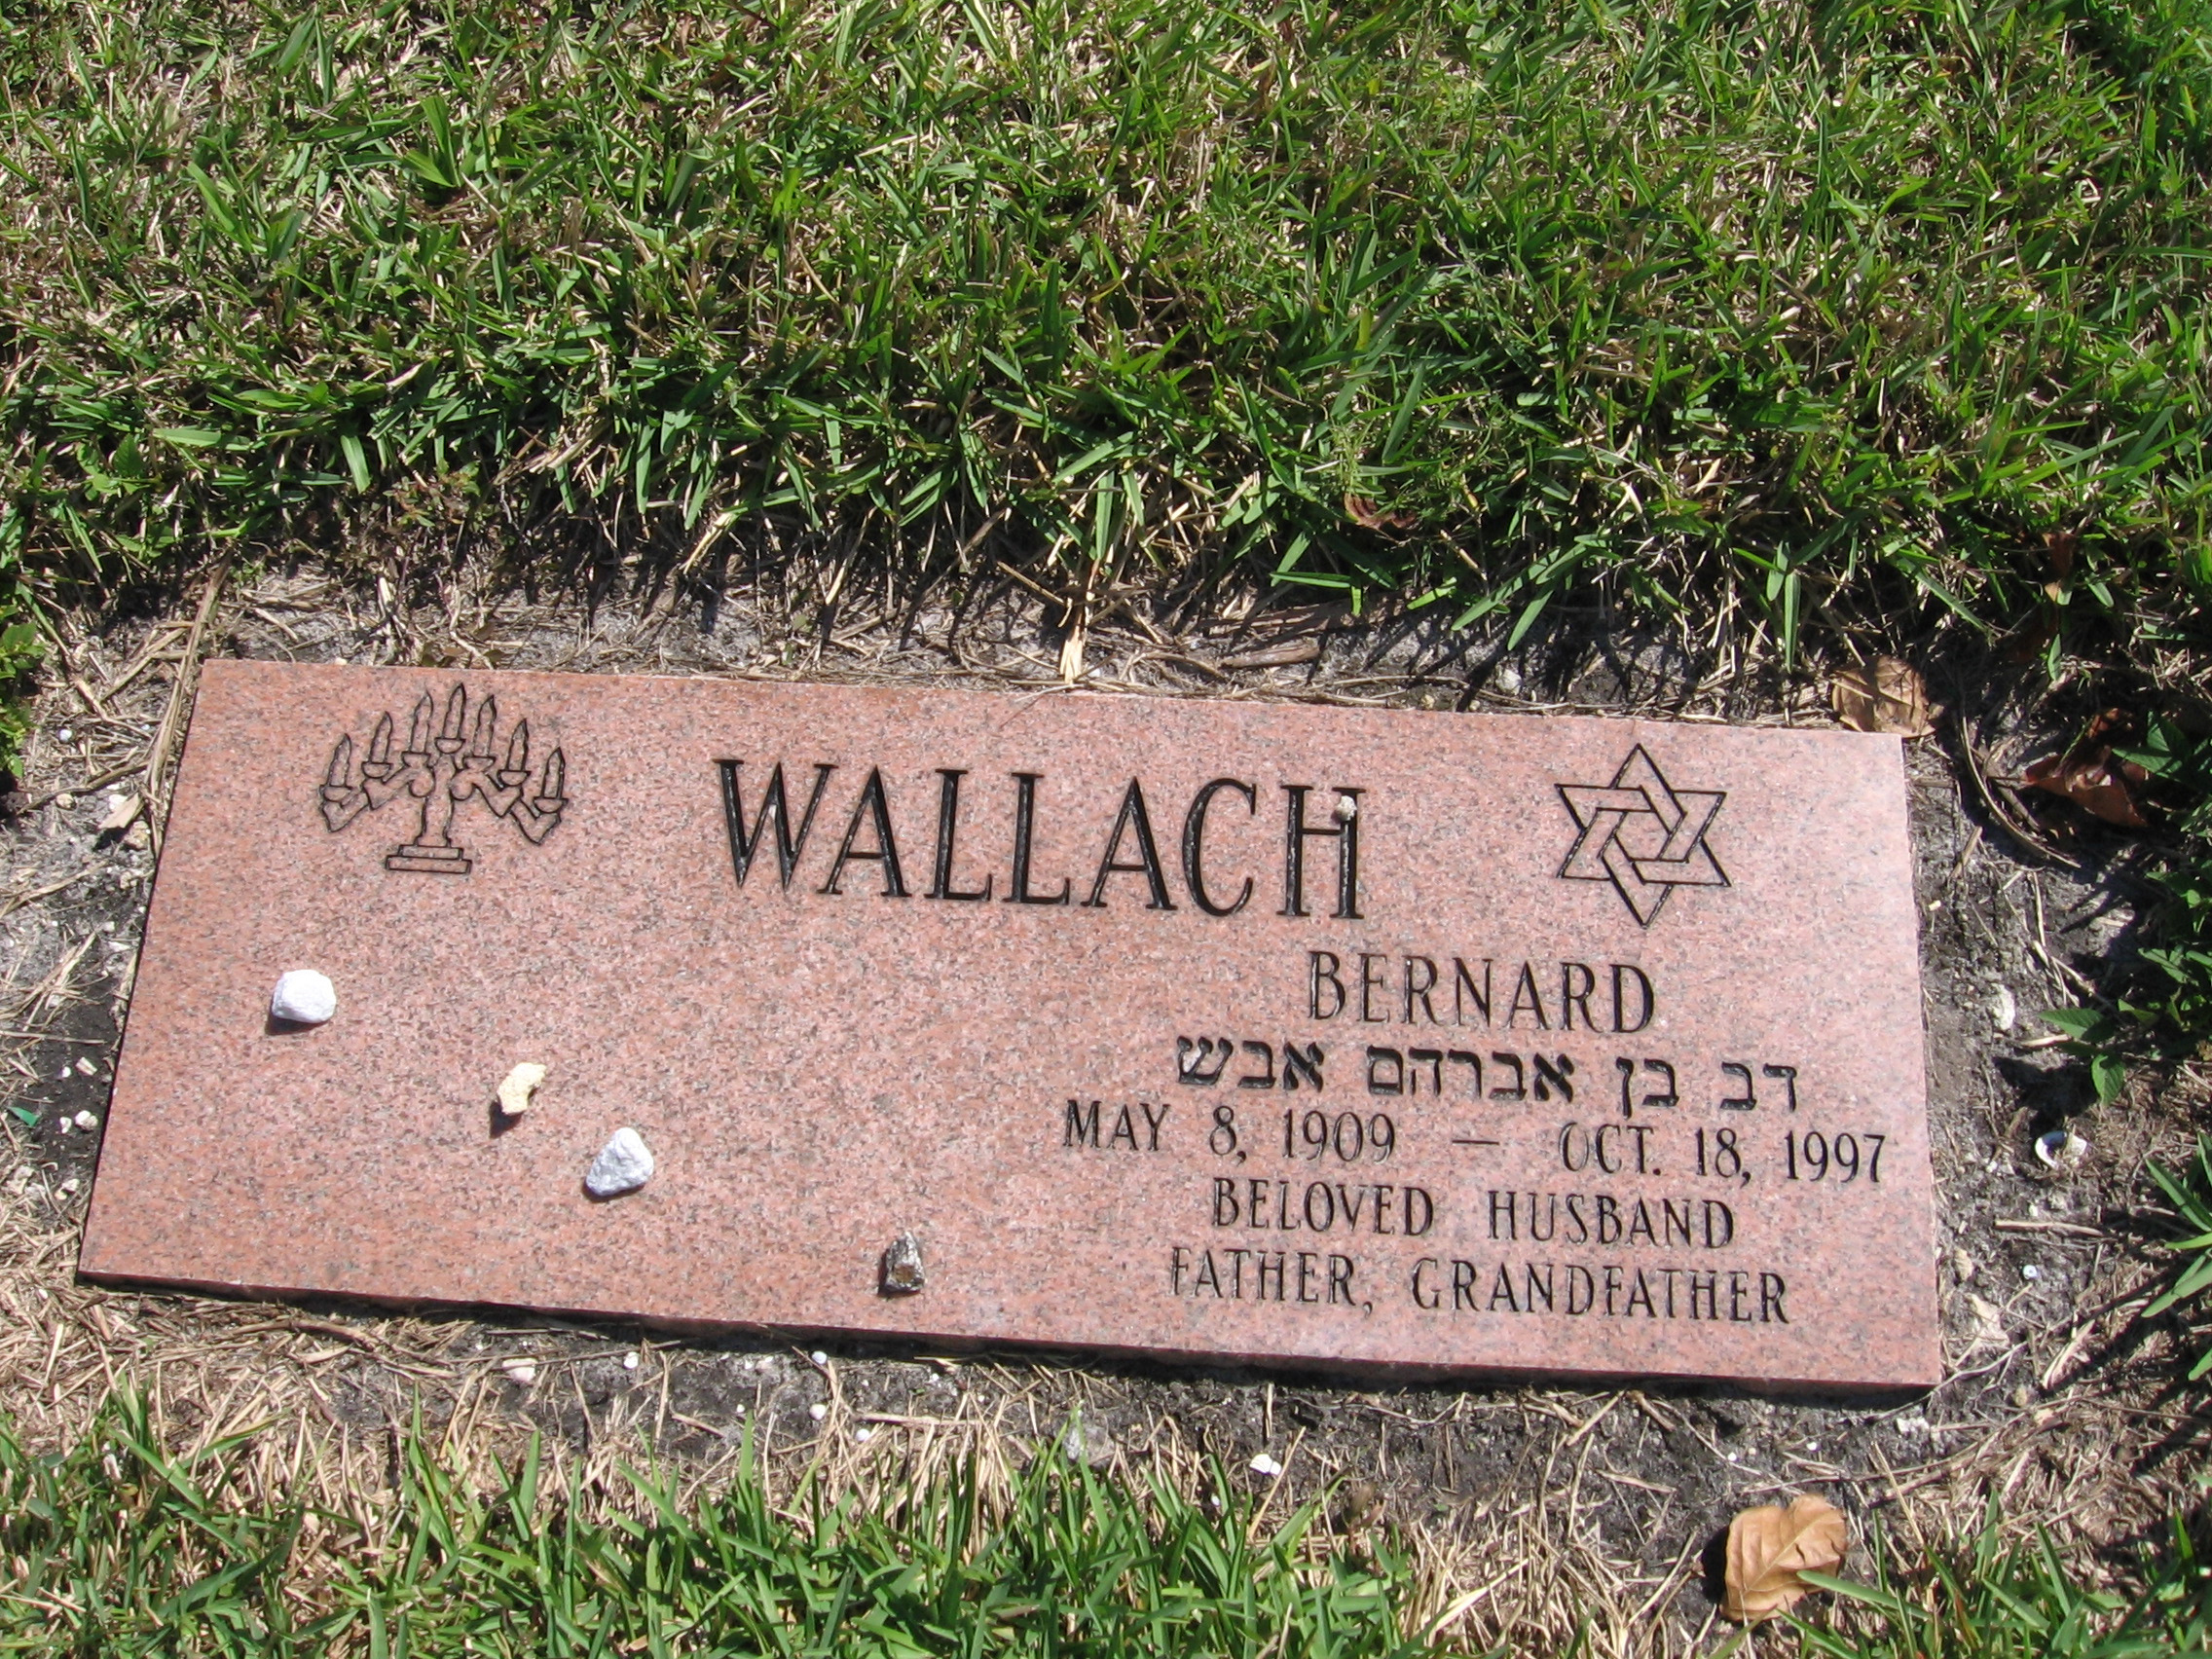 Bernard Wallach